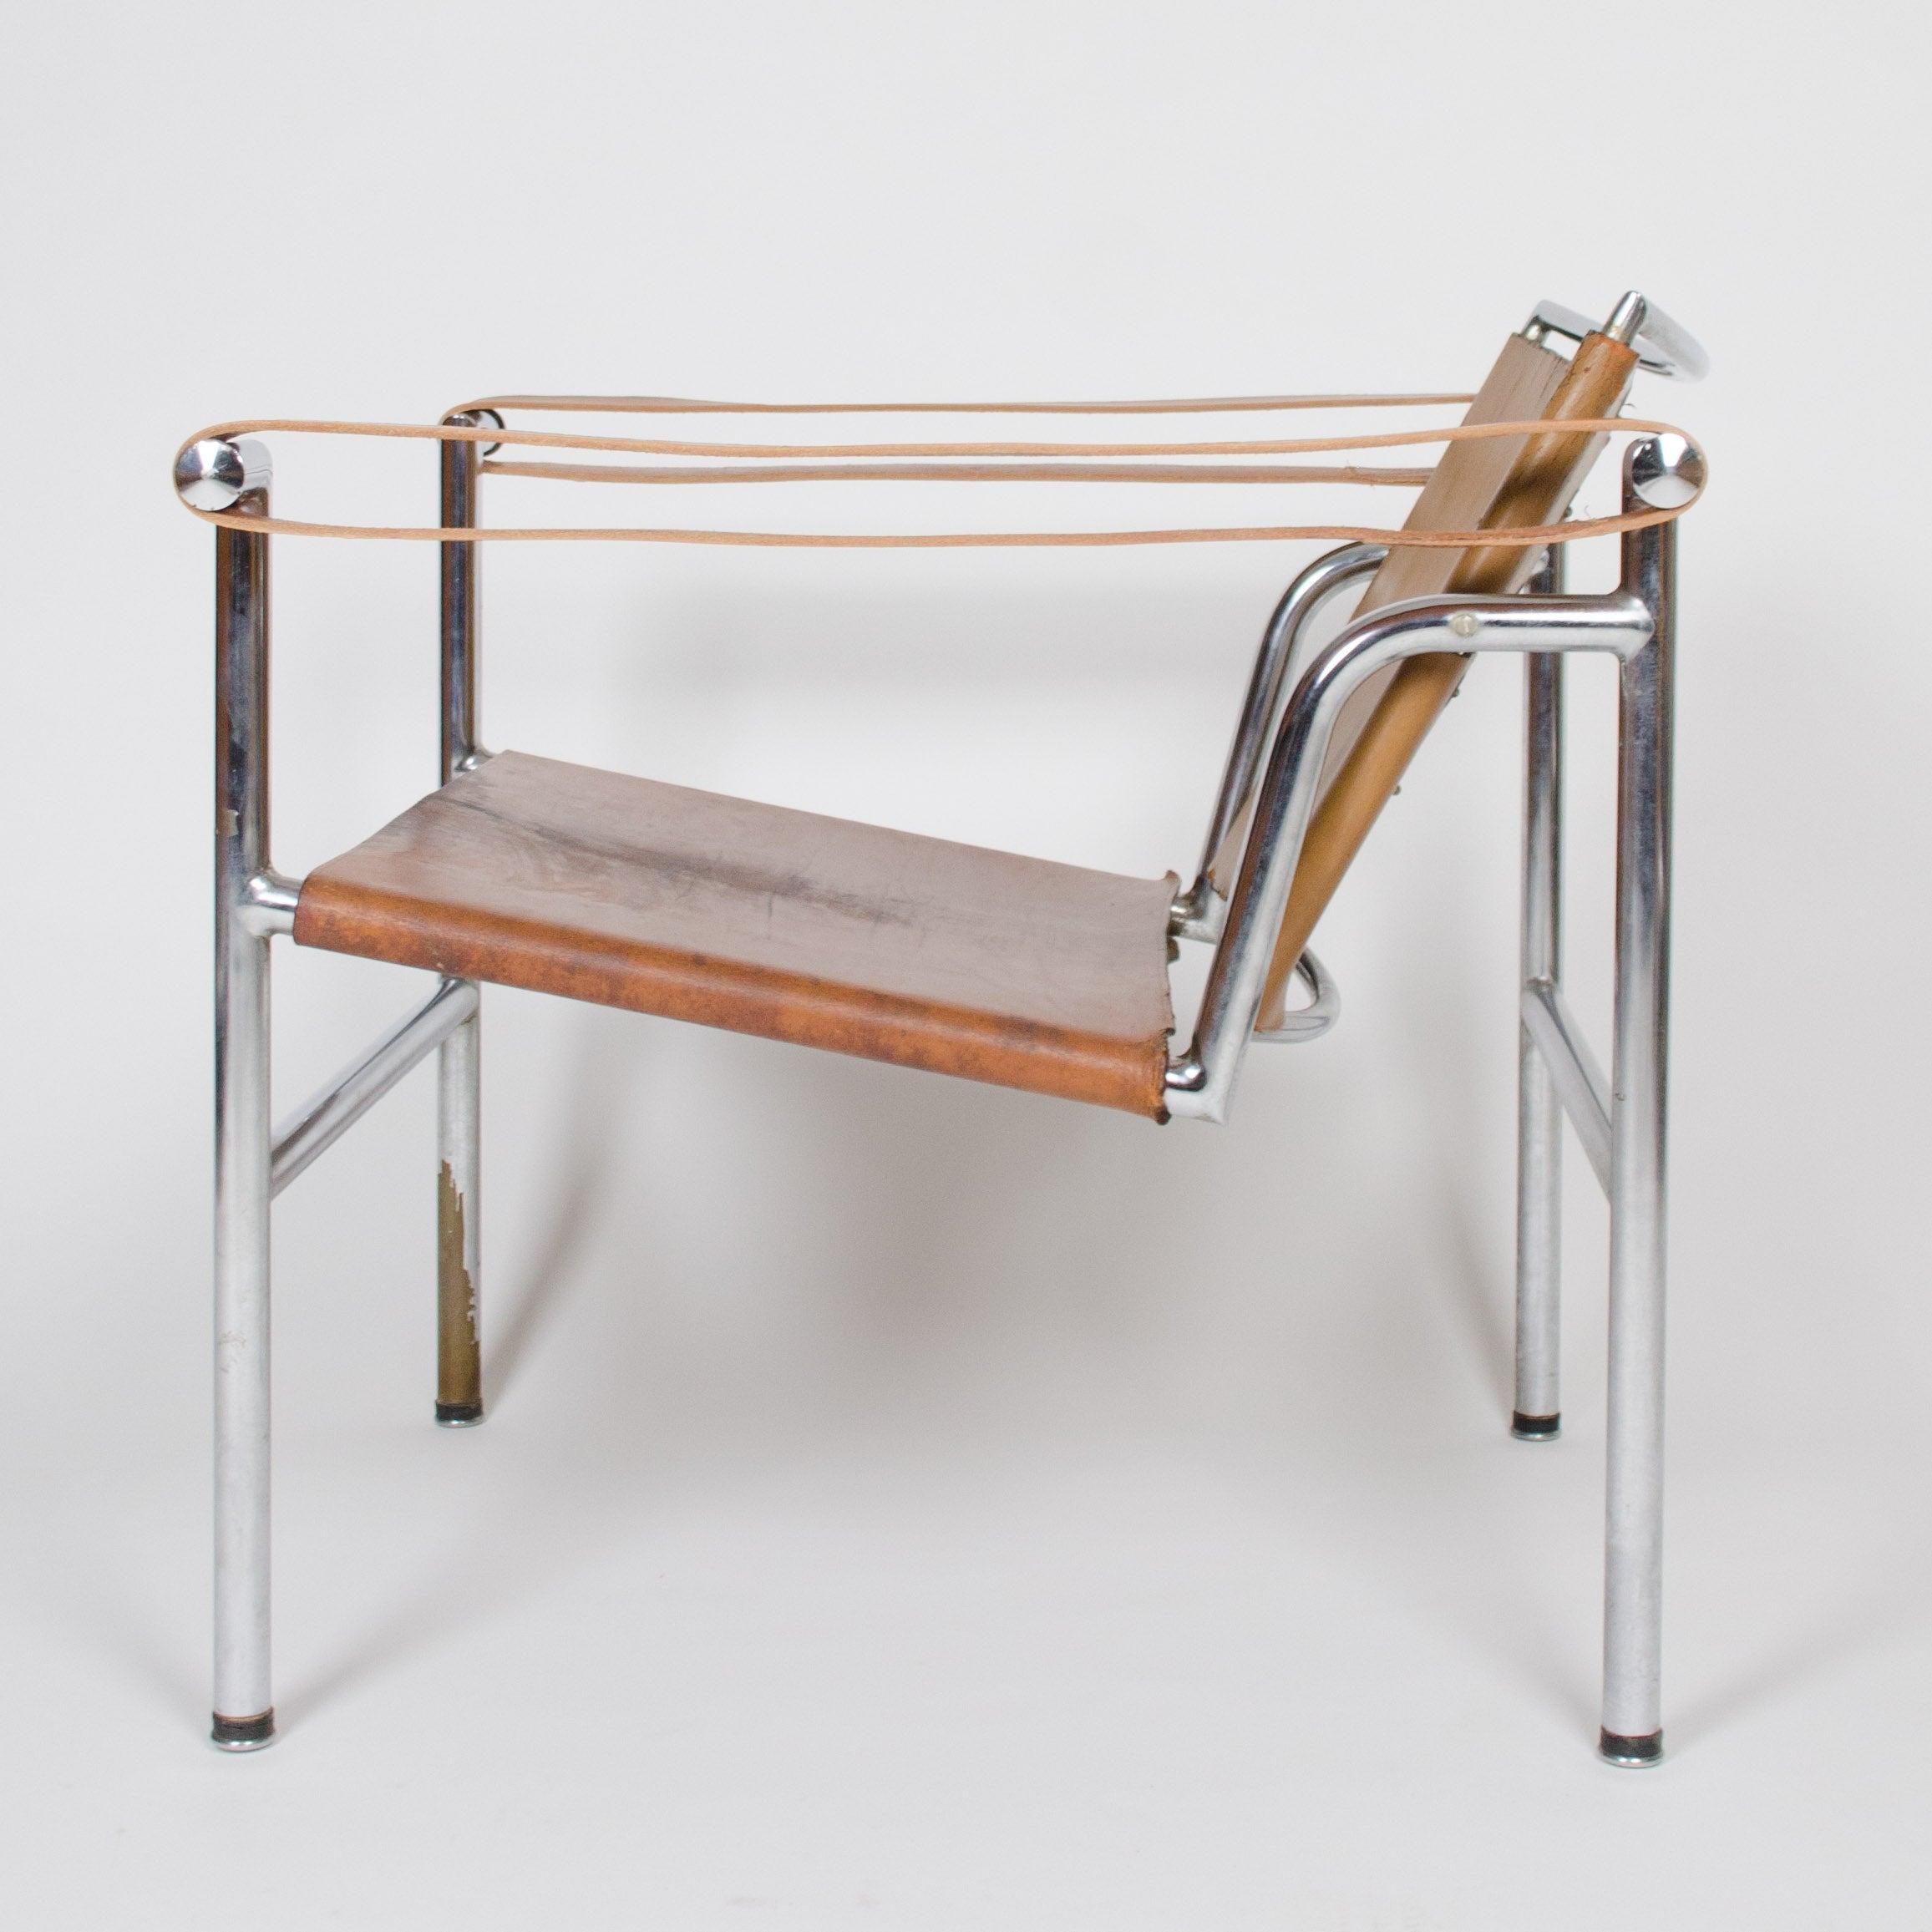 La vente porte sur une paire de fauteuils LC1 Basculant très spéciaux et originaux. Ils ont été conçus notamment par Le Corbusier, avec Pierre Jeanneret et Charlotte Perriand.

Ce qui rend cette paire particulièrement spéciale, c'est qu'elle porte